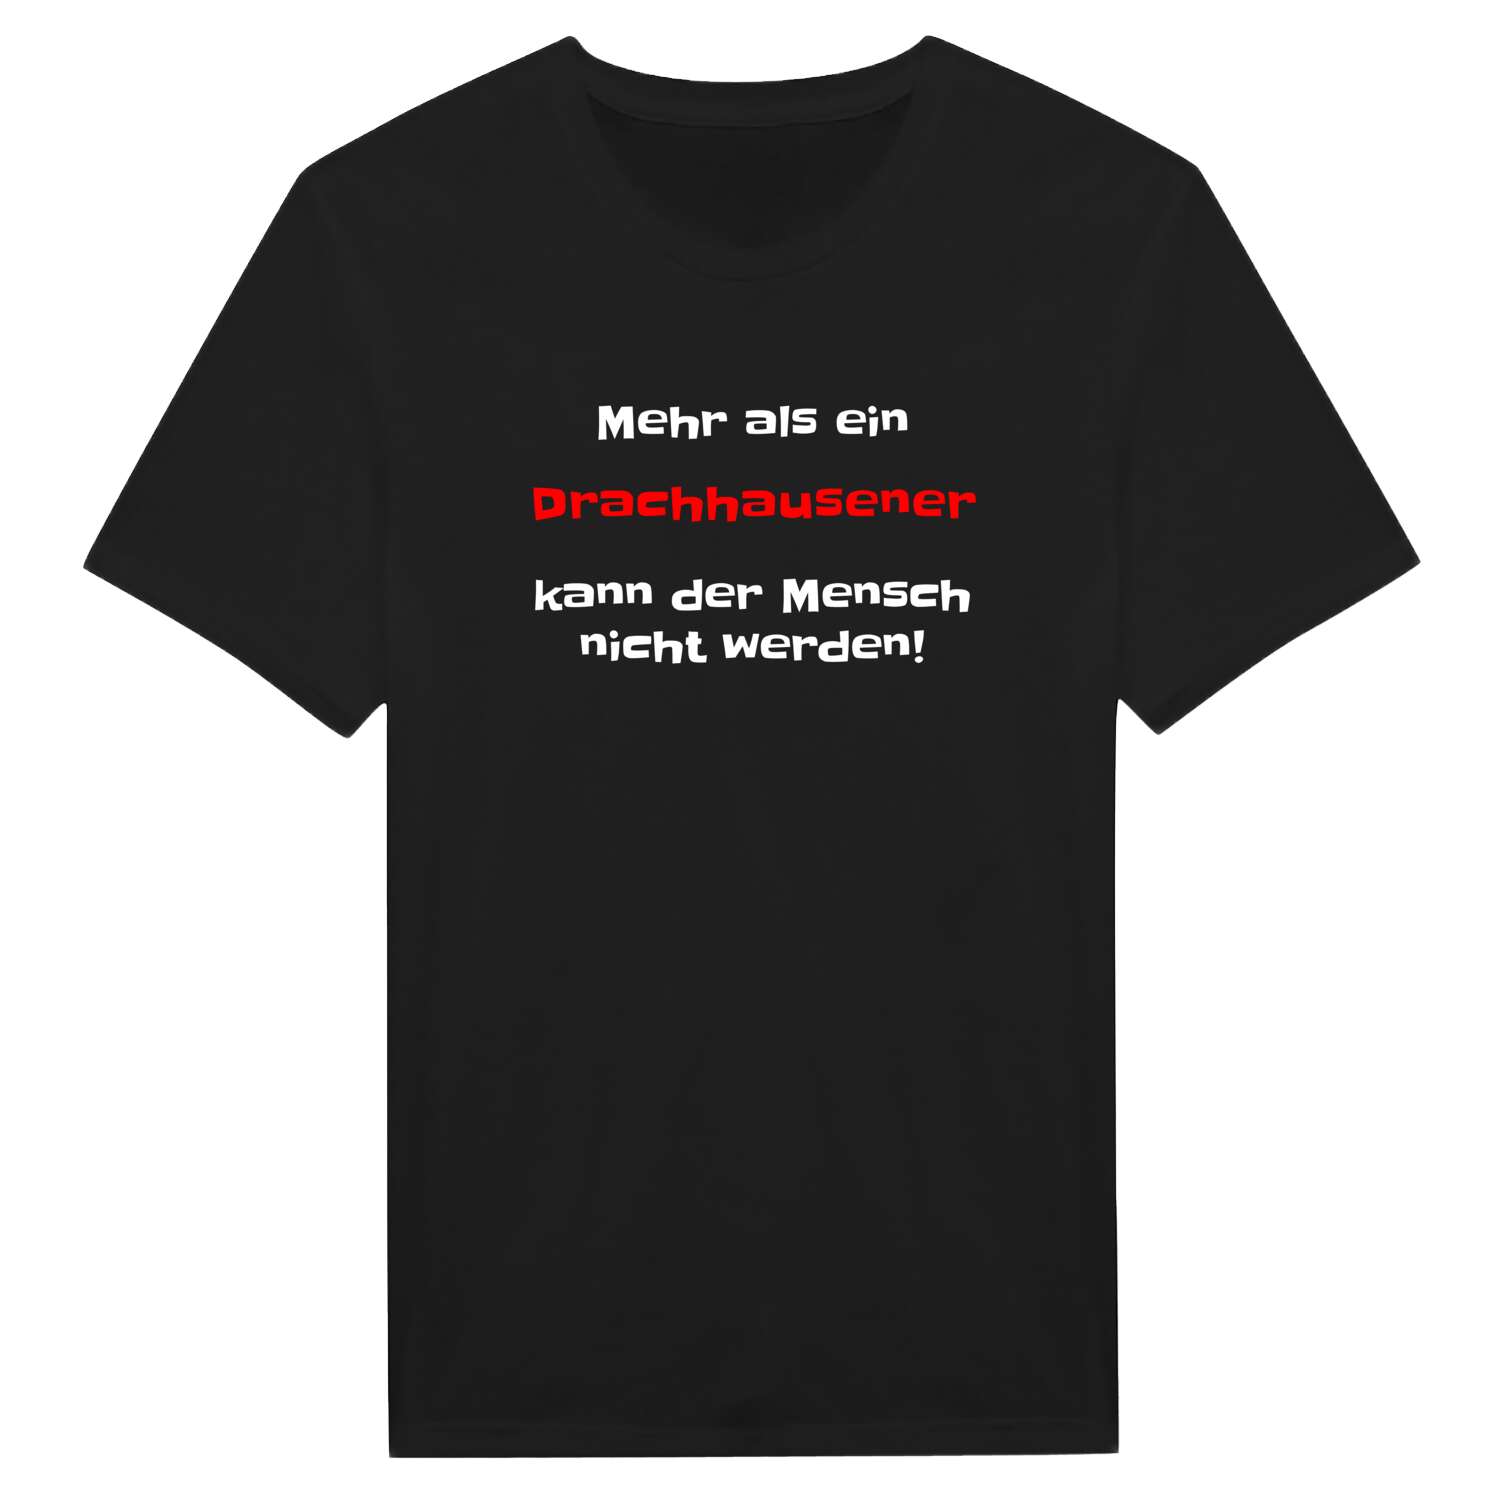 Drachhausen T-Shirt »Mehr als ein«